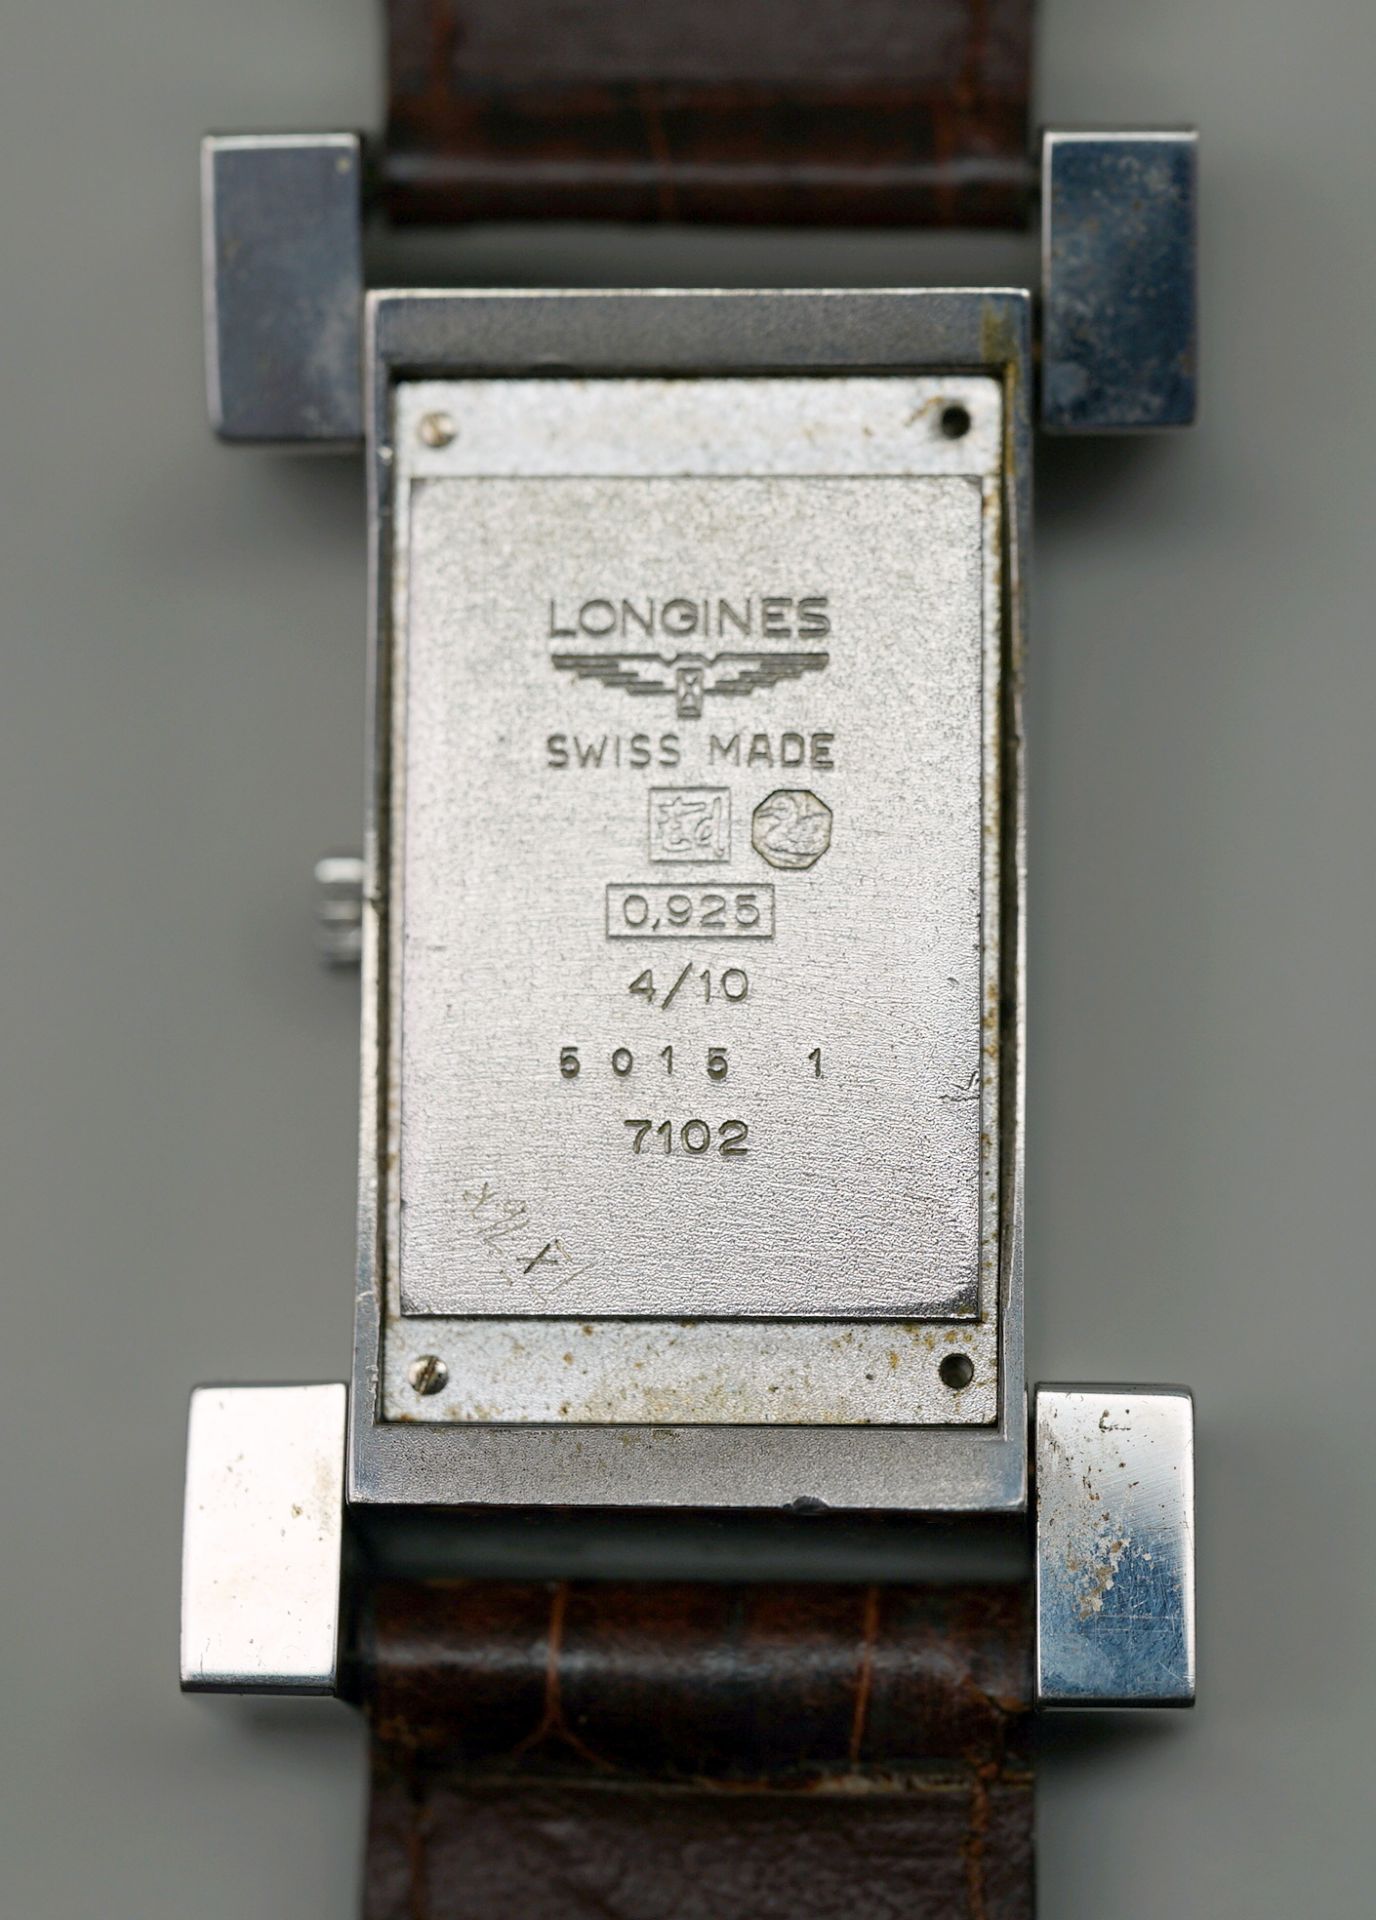 Longines, Armbanduhr Sterling Silber 925. Rückseite mit "5015 1" und "7102" nummerier - Image 3 of 3